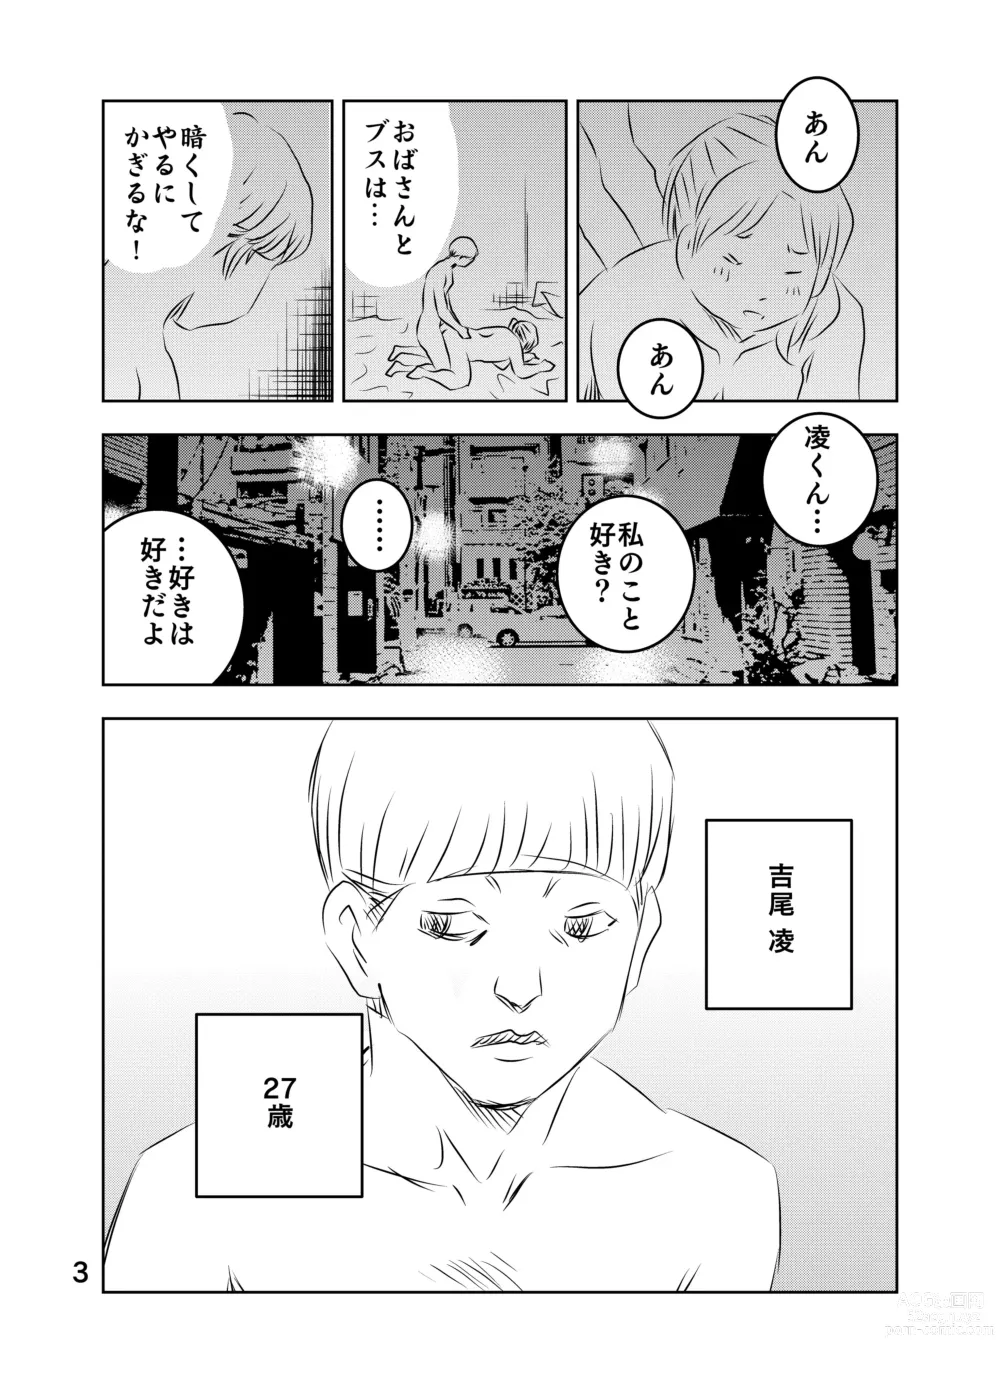 Page 69 of doujinshi Zurui Hito-tachi